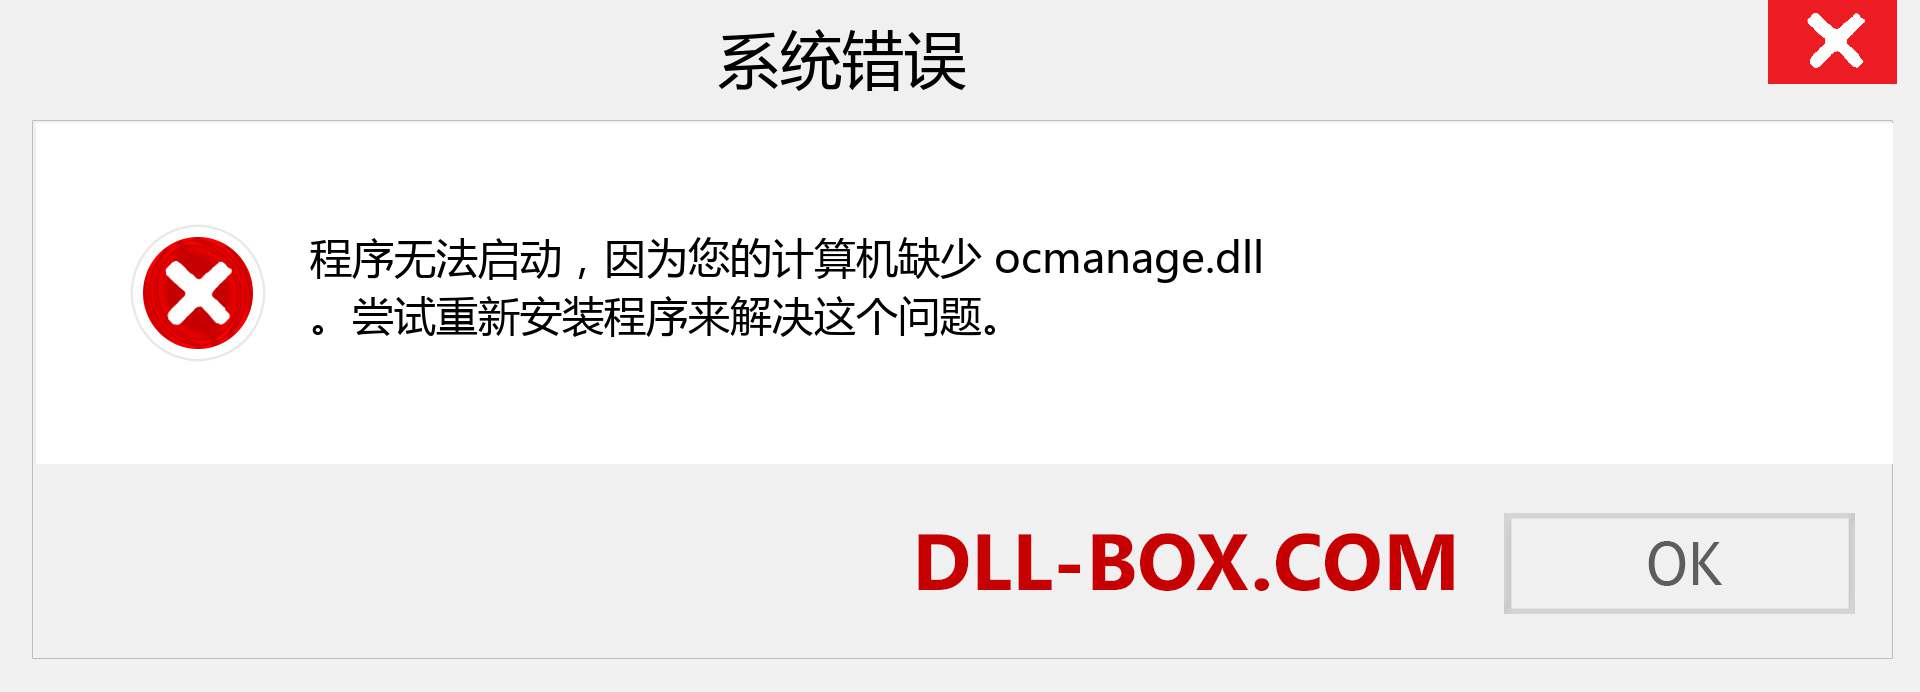 ocmanage.dll 文件丢失？。 适用于 Windows 7、8、10 的下载 - 修复 Windows、照片、图像上的 ocmanage dll 丢失错误